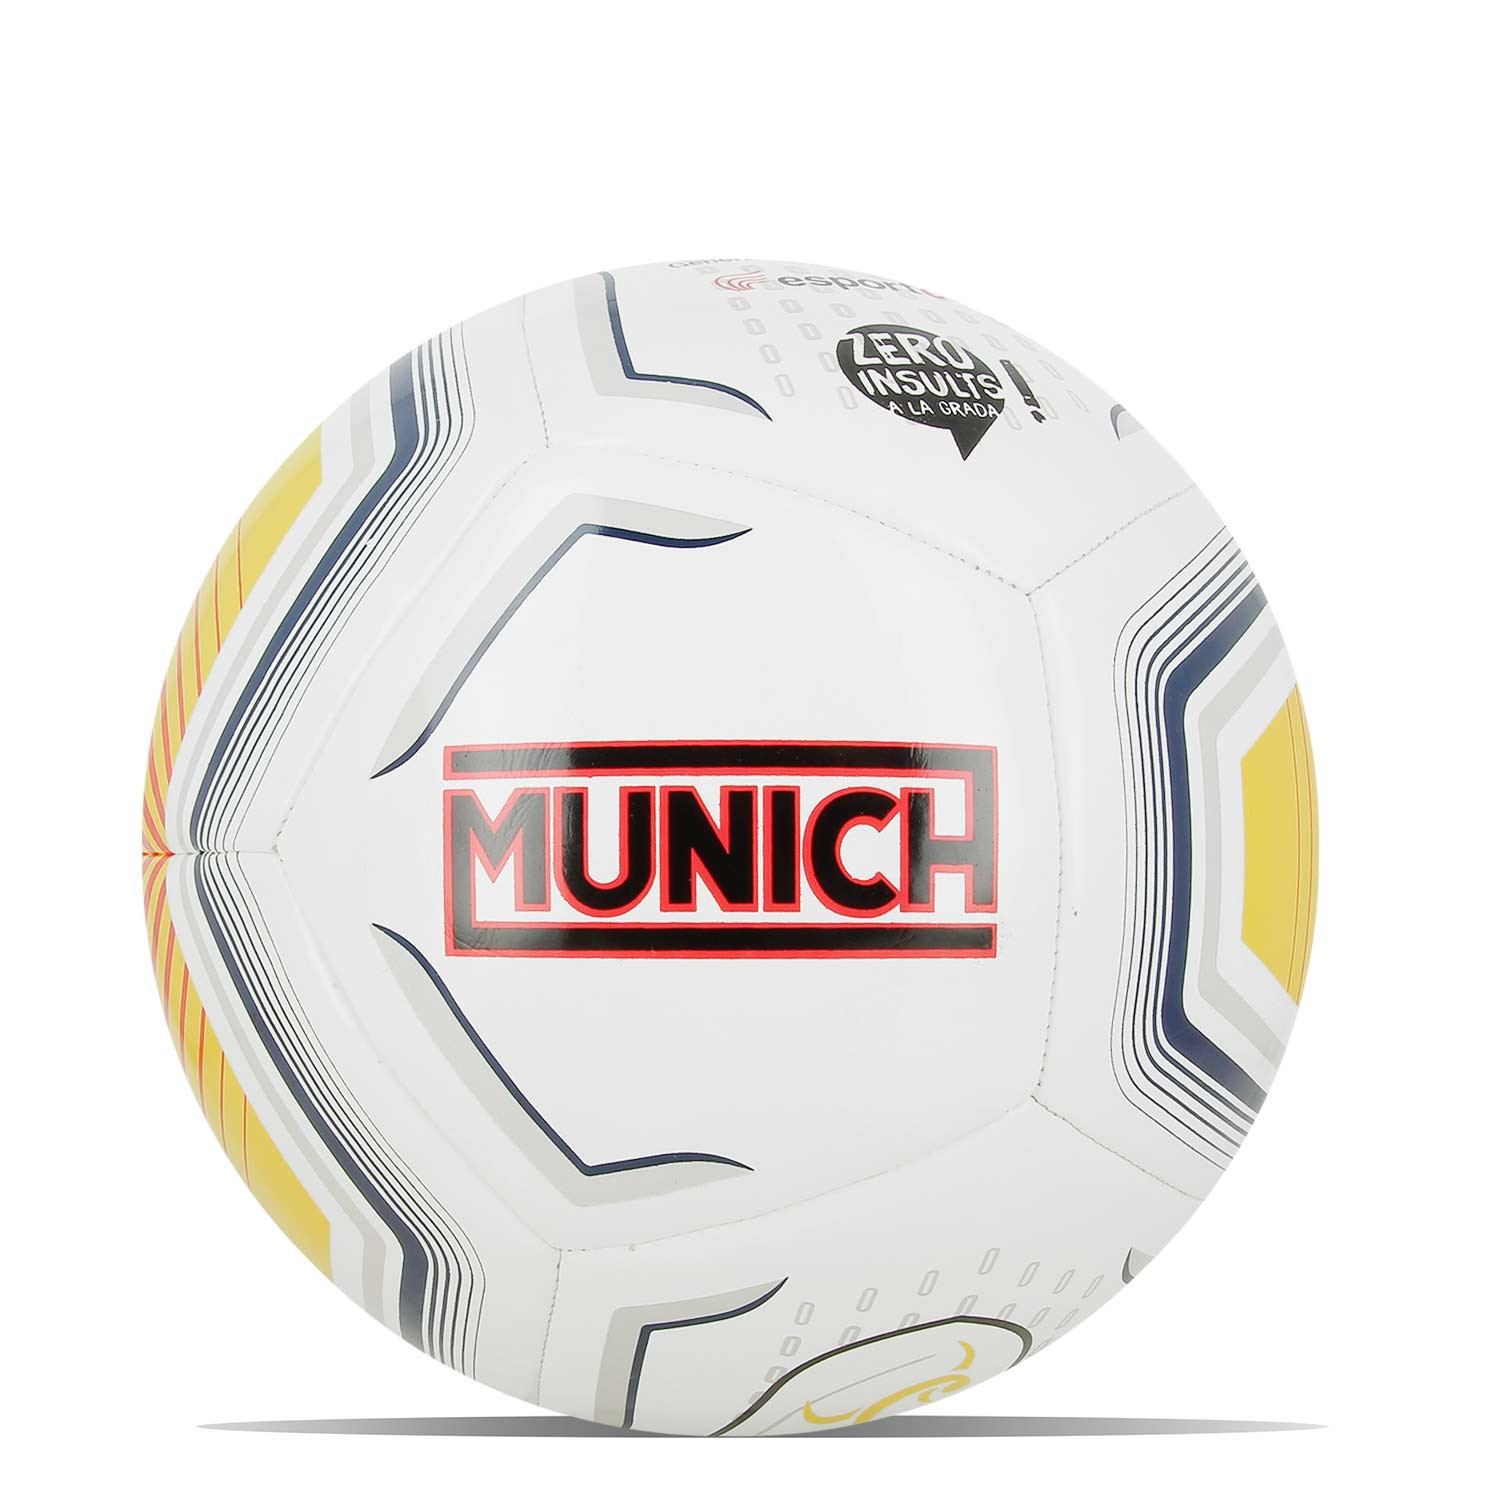 Balón Fútbol Sala Imviso FS 900 58 cm ( talla 3 ) blanco